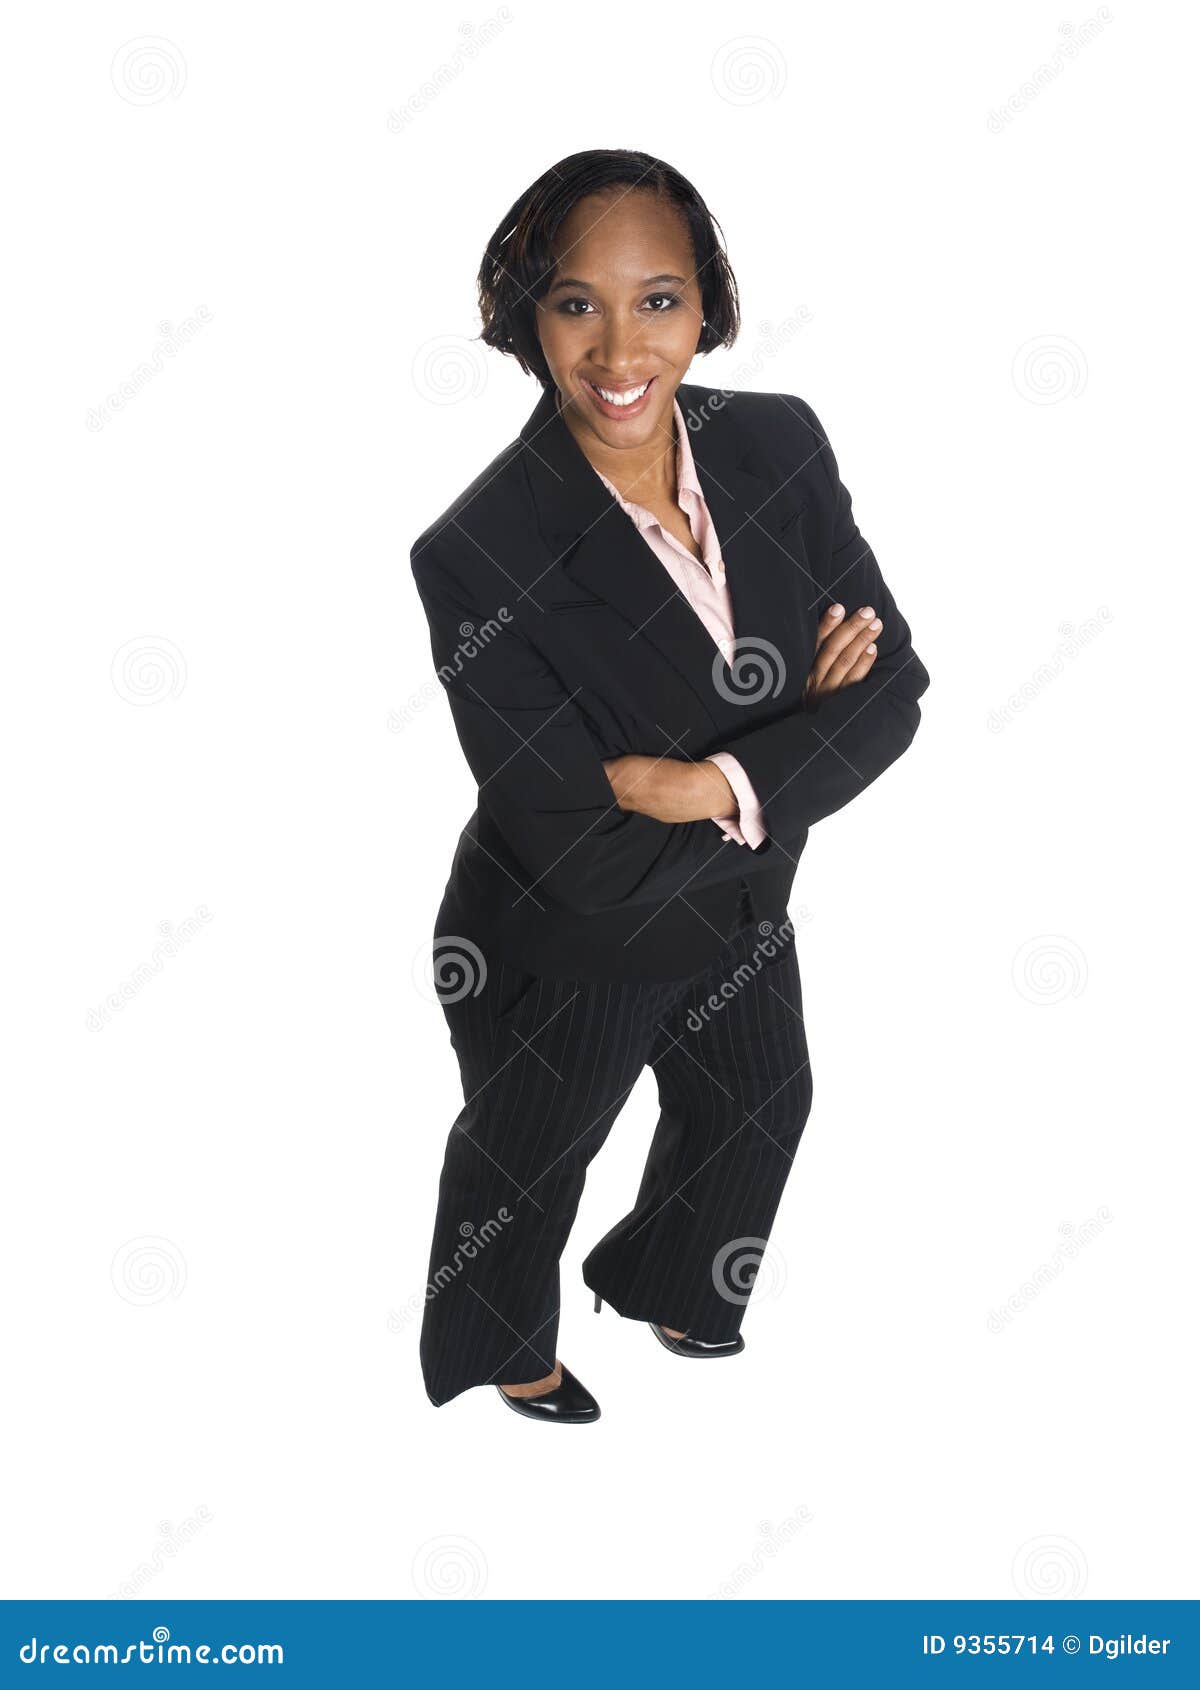 Businesswoman - happy stock photo. Image of white, studio - 9355714